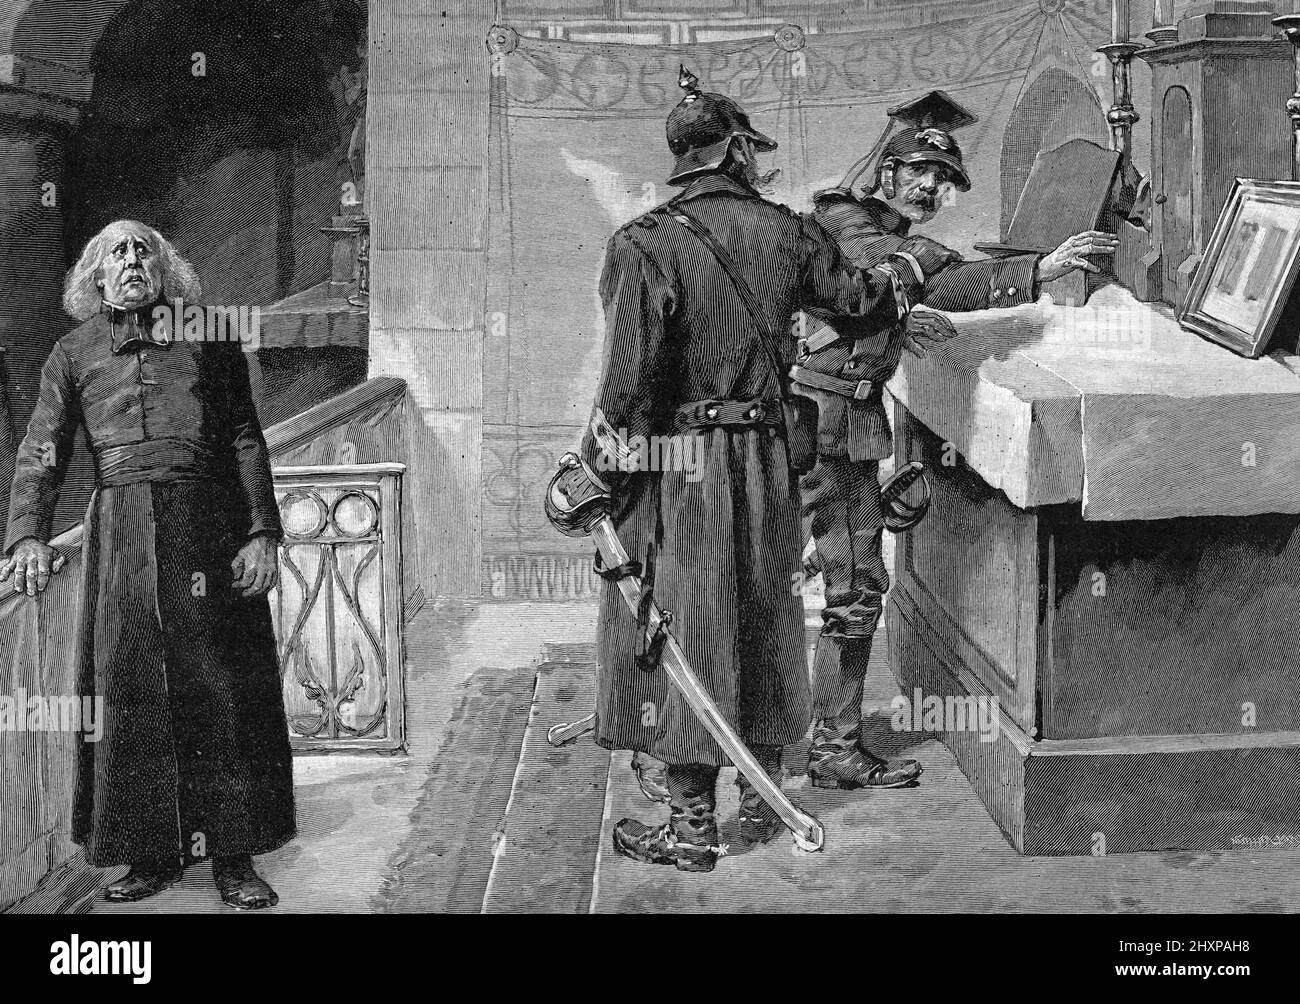 Guerre franco-prussienne de 1870 : 'es soldats prussiens profanant une eglise en Lorraine' Gravure tiree de 'Sang gaulois' d'Edouard Zier 1905 Collection privee Stockfoto